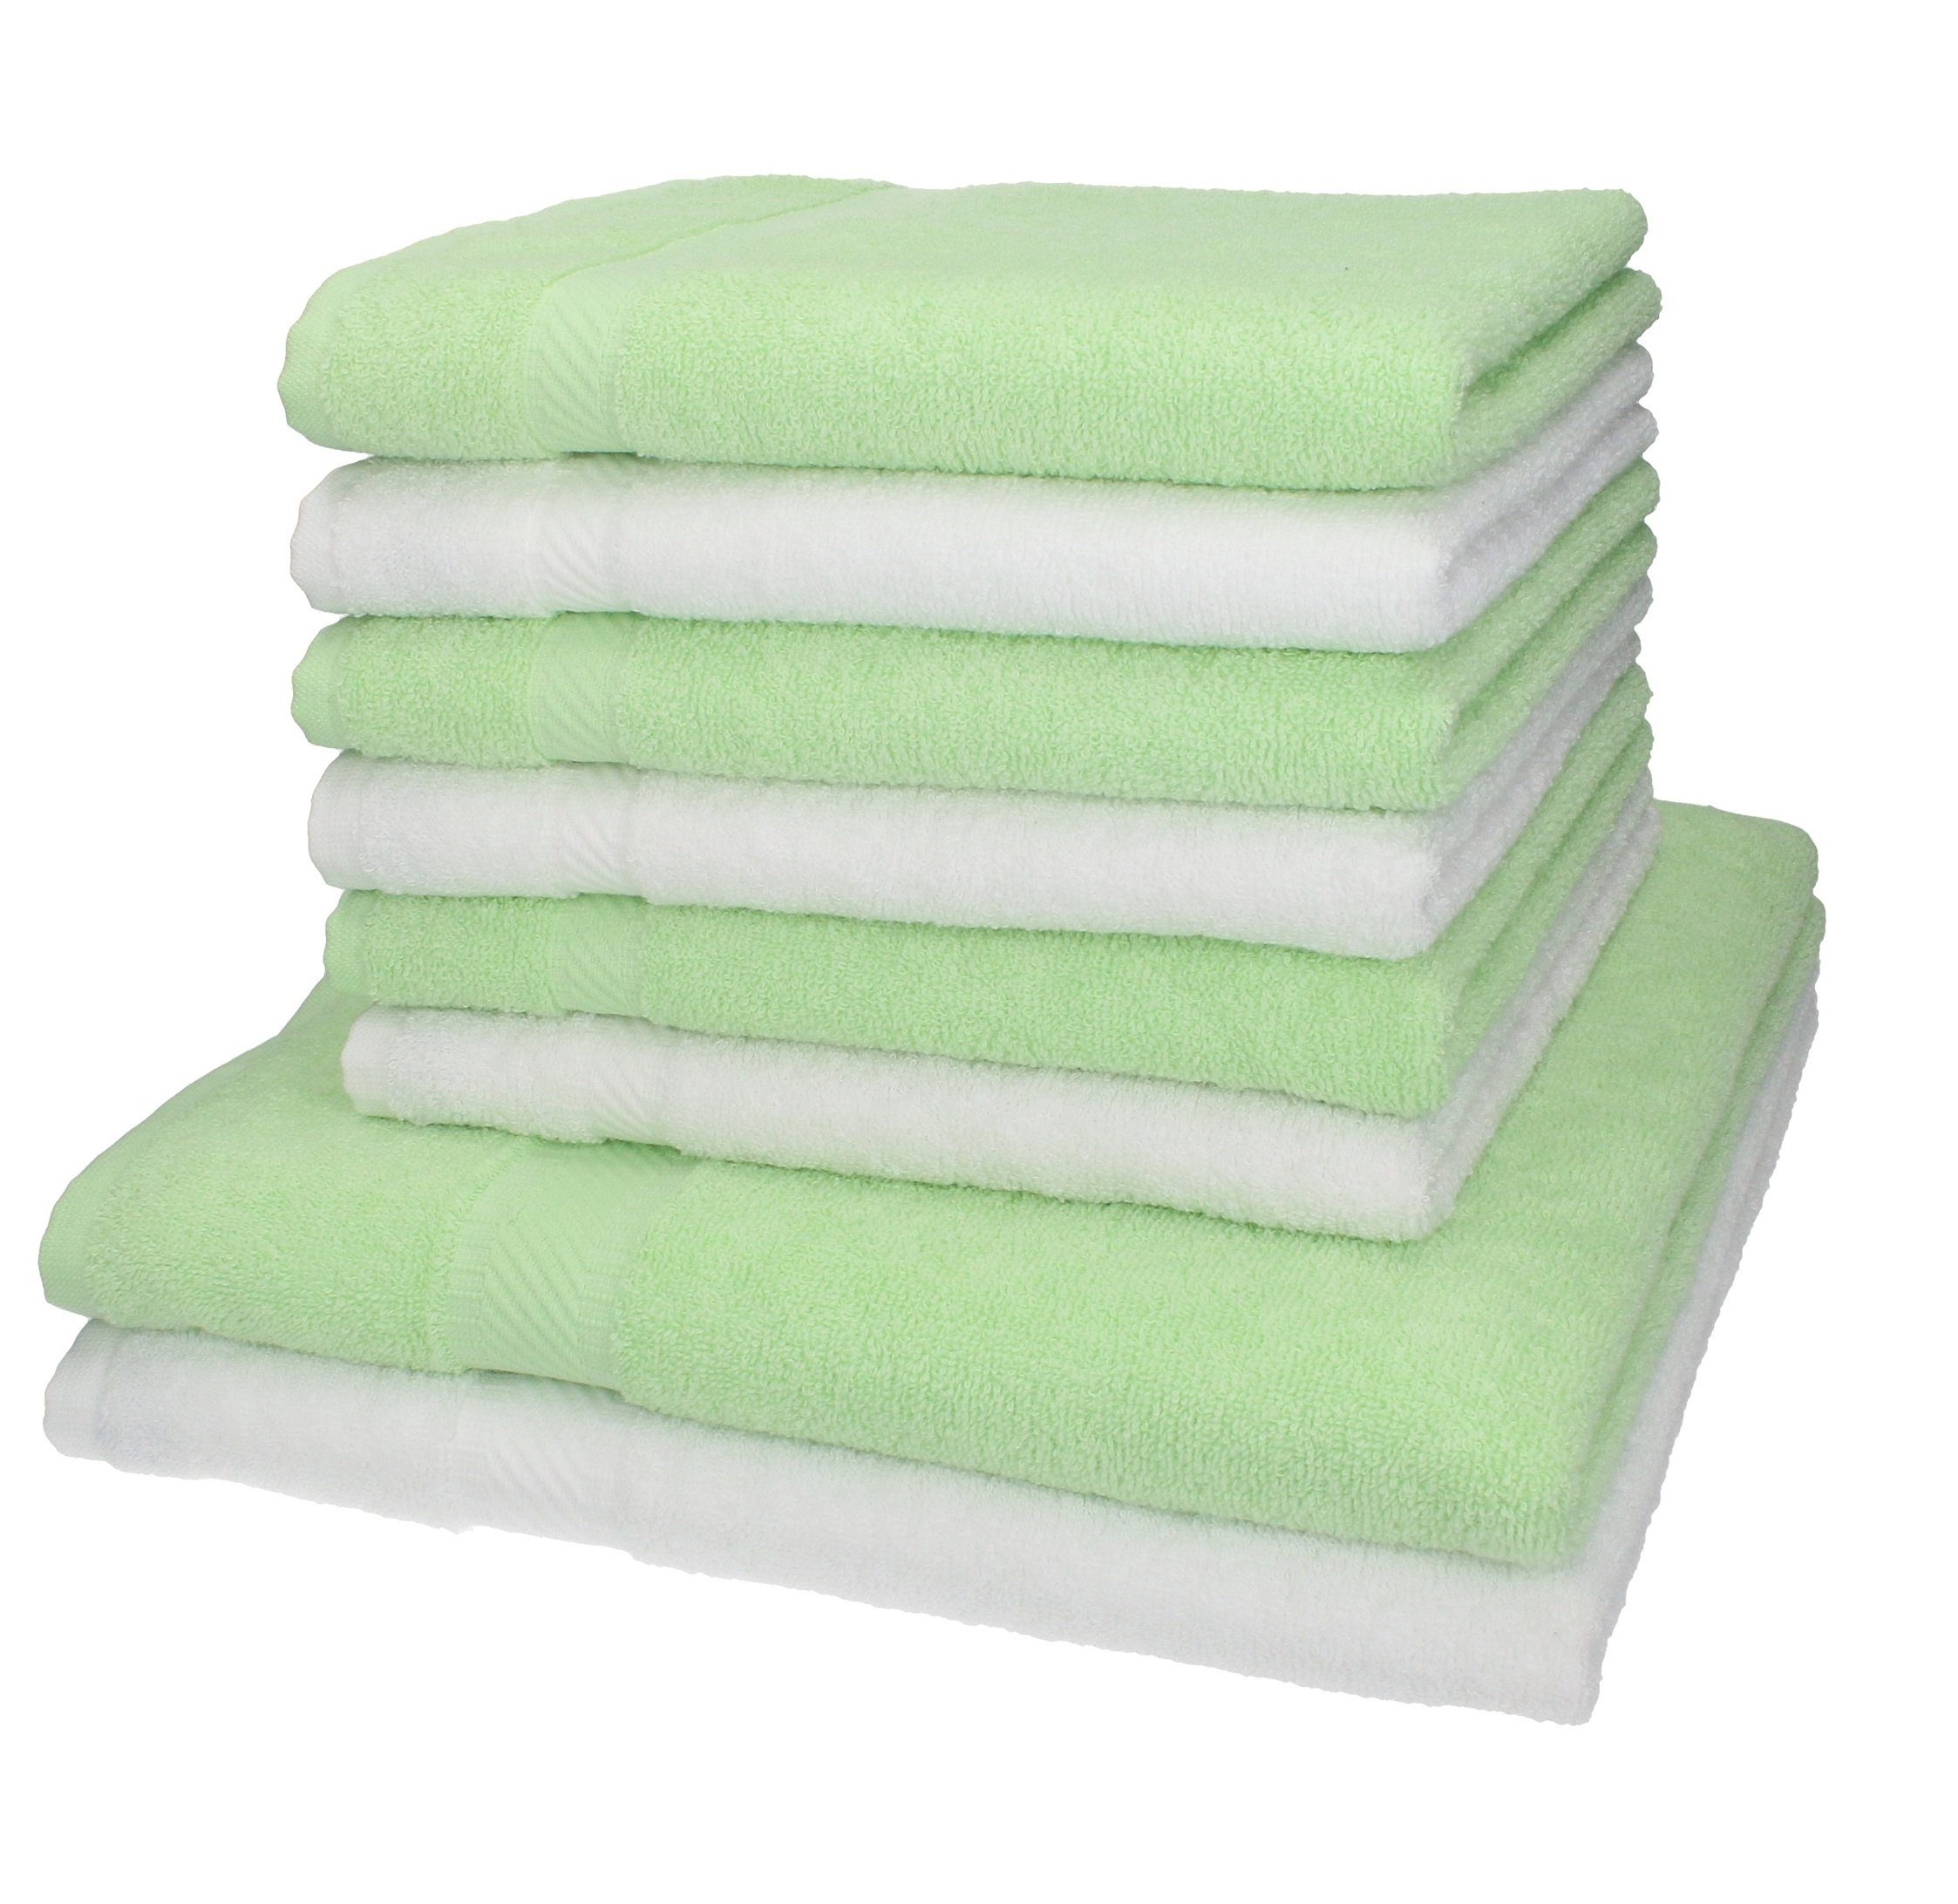 Betz Handtuch Set 8-TLG. Handtuch-Set Palermo Farbe weiß und grün, 100% Baumwolle